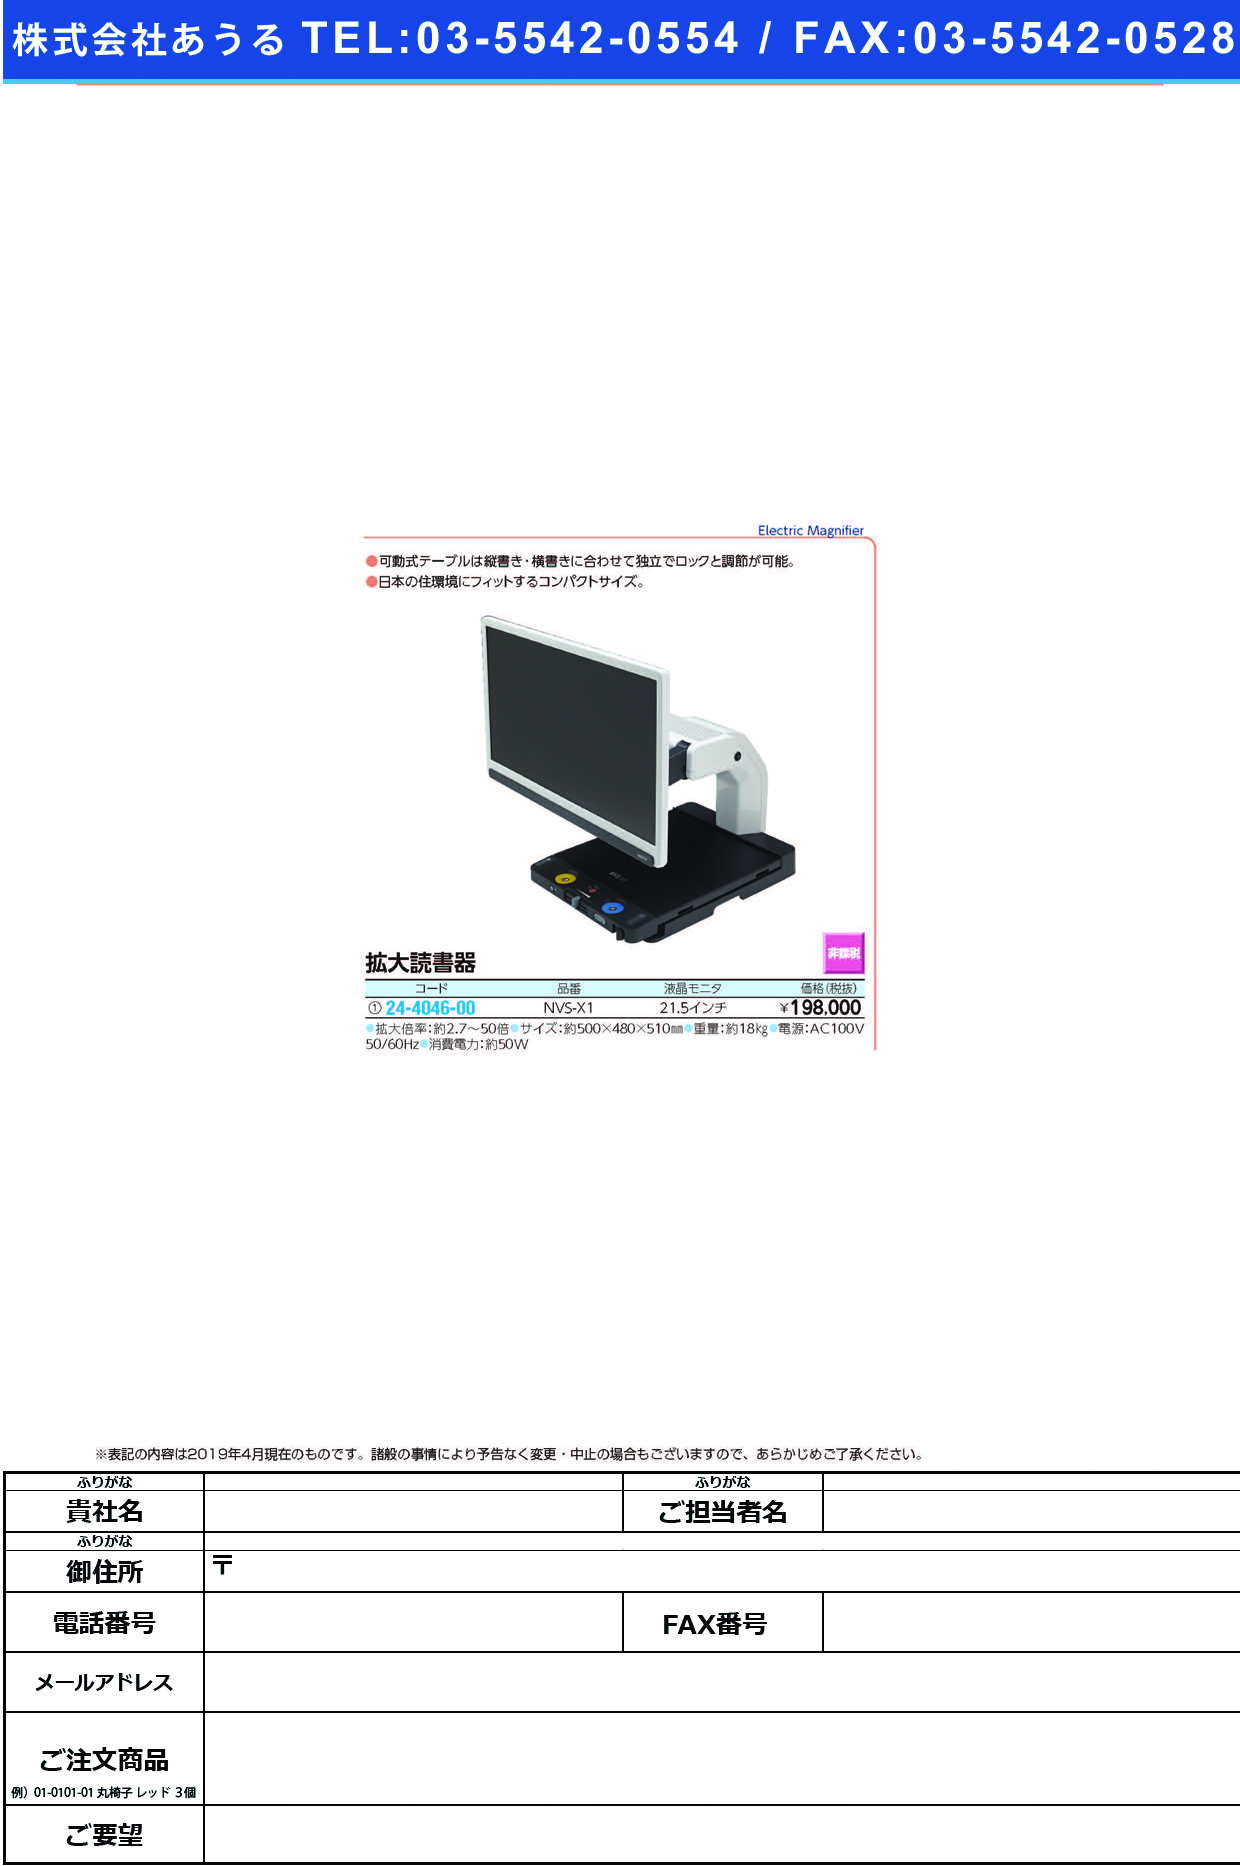 (24-4046-00)据置型拡大読書器 NVS-X1 ｶｸﾀﾞｲﾄﾞｸｼｮｷ【1台単位】【2019年カタログ商品】